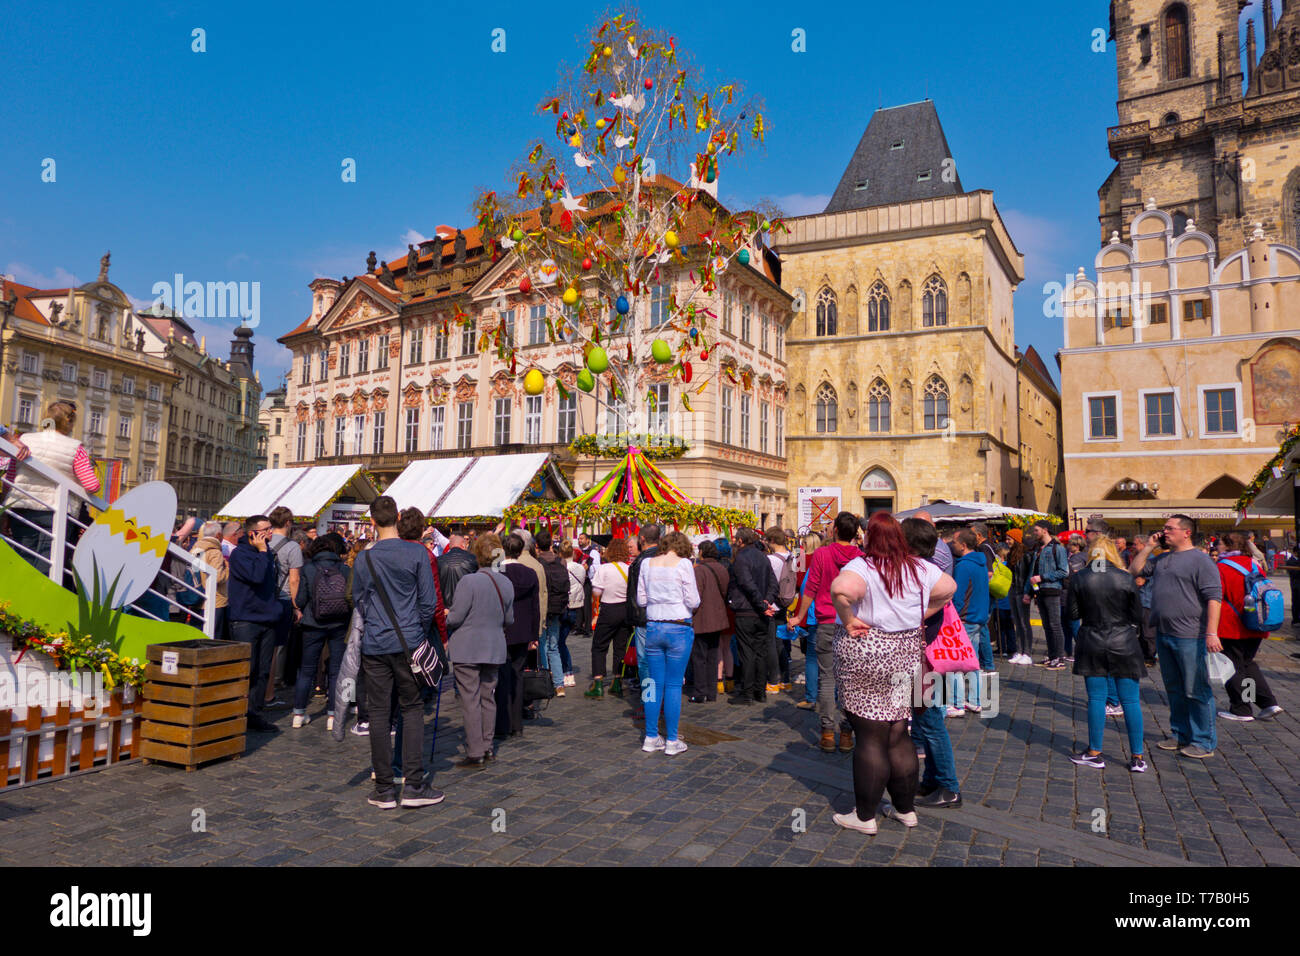 Marché de Pâques, place de la vieille ville, Prague, République Tchèque Banque D'Images